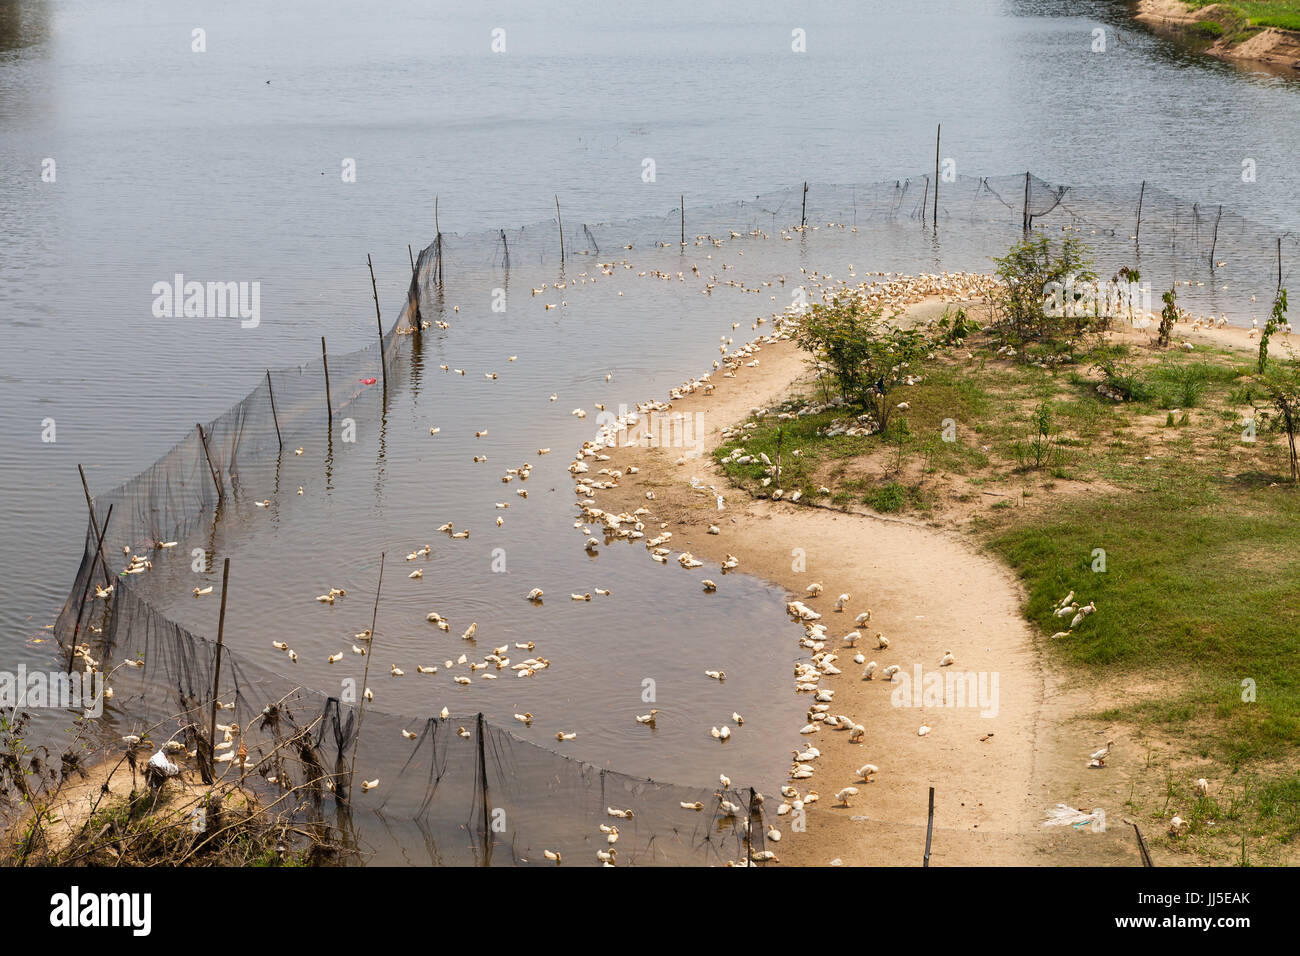 Vietnam - Marzo 14, 2017: típica granja avícola en el río Foto de stock